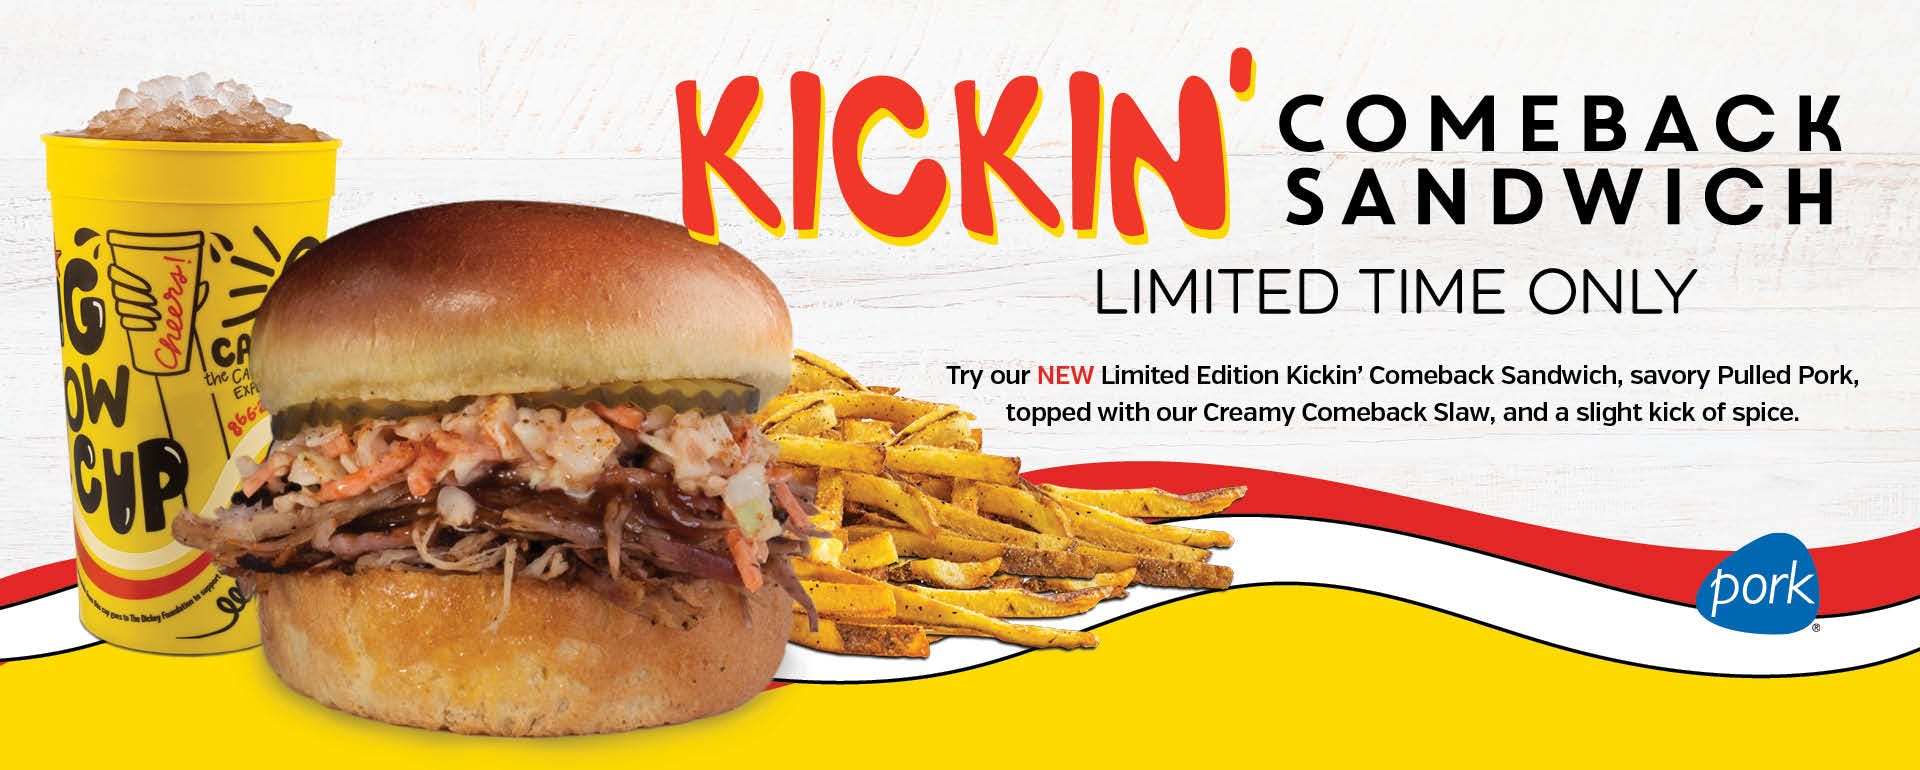 Kickin' Comeback Sandwich